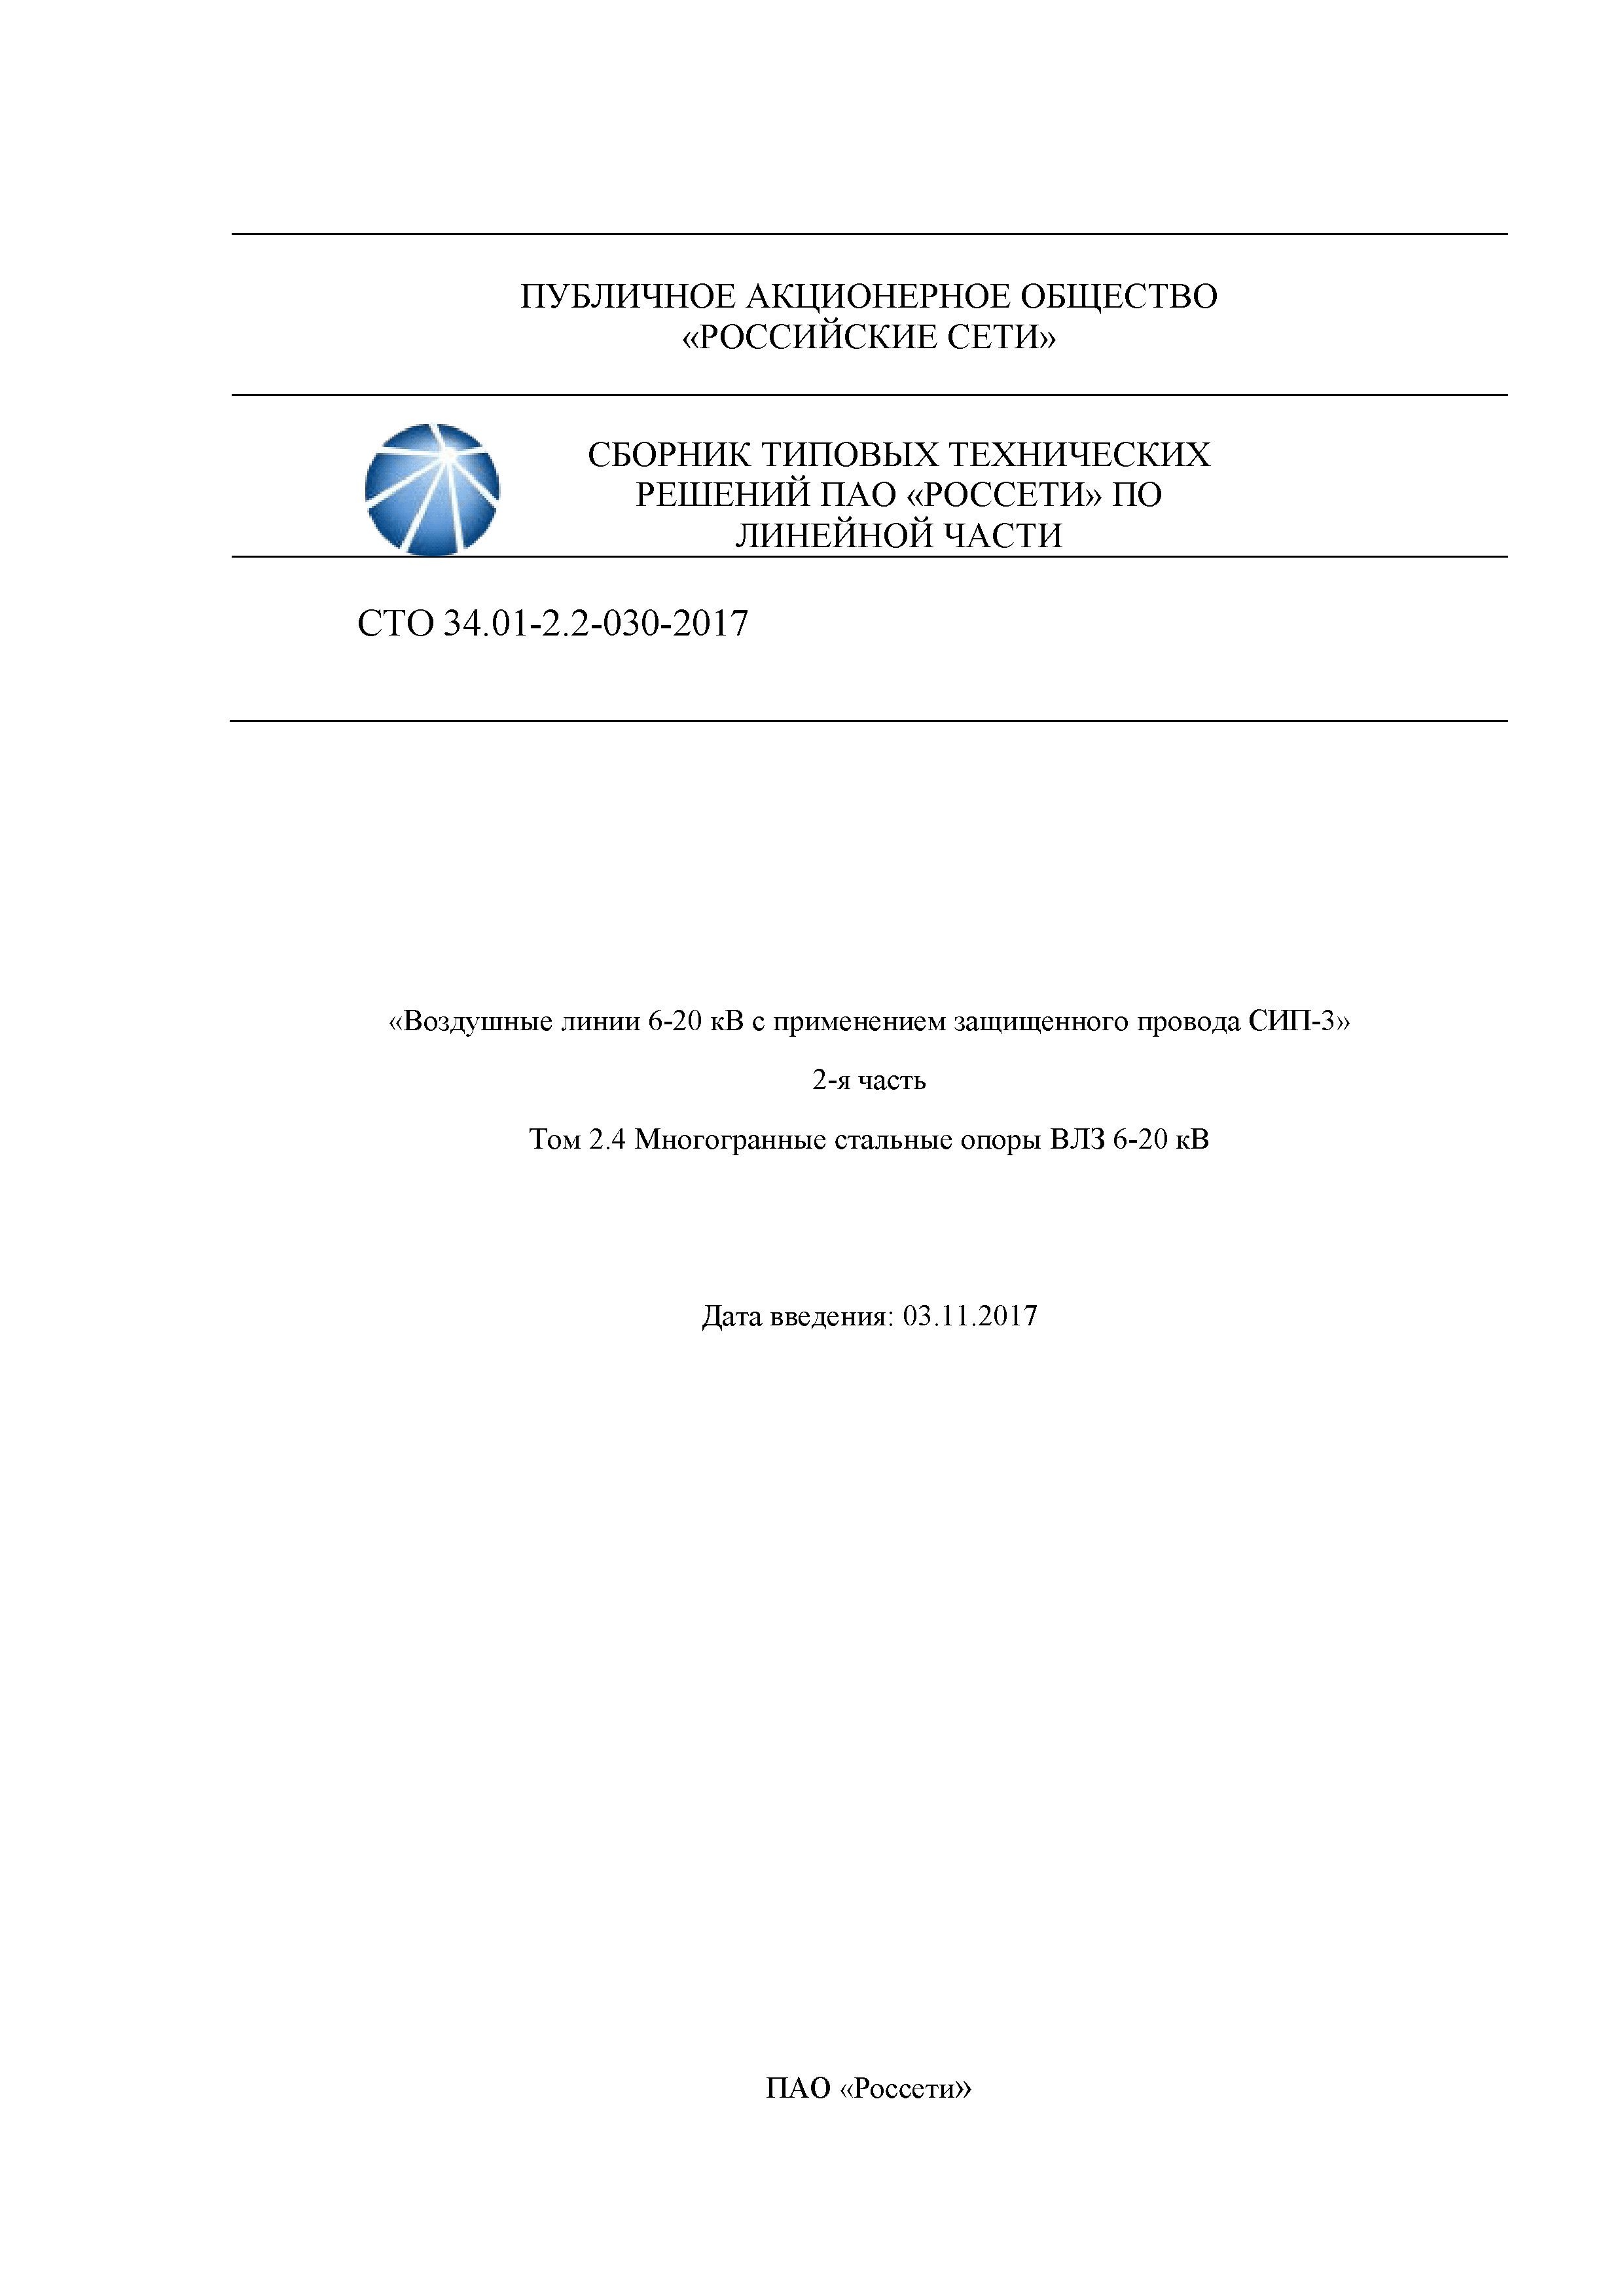 СТО 34.01-2.2-030-2017